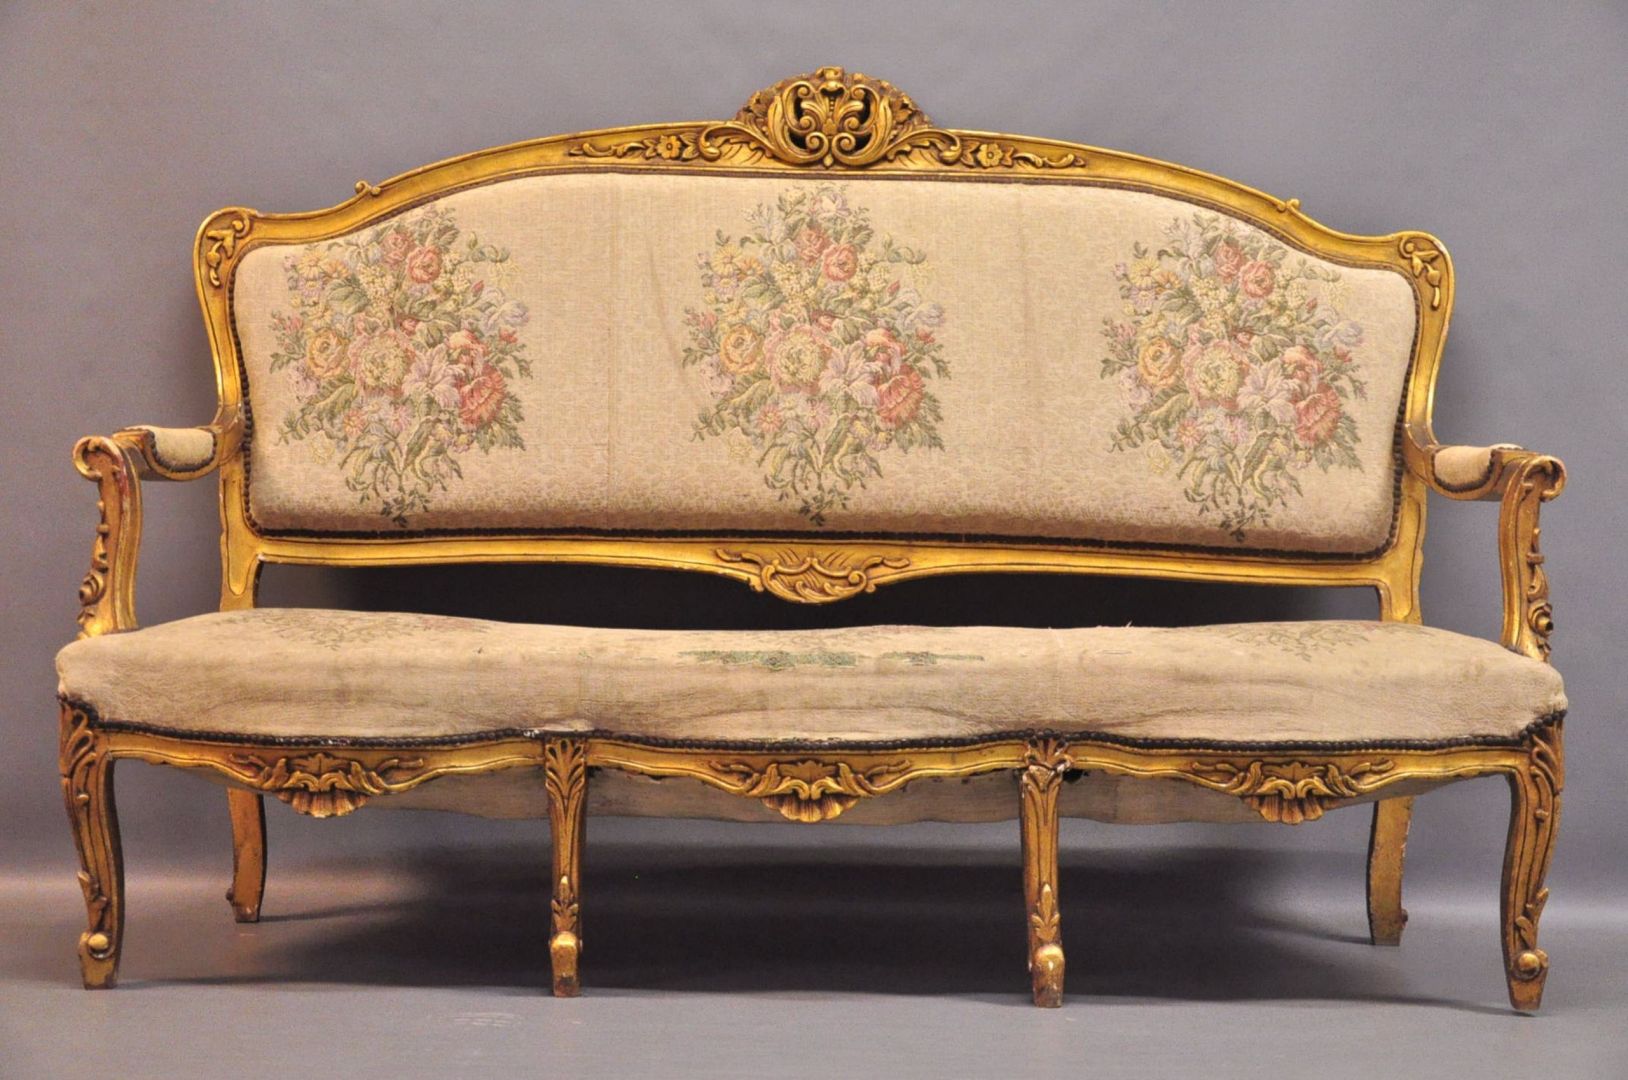 Piękna i elegancka tapicerka, złote zdobienia. Idealna sofa do klasycznego, francuskiego wnętrza. Fot. Archiwum